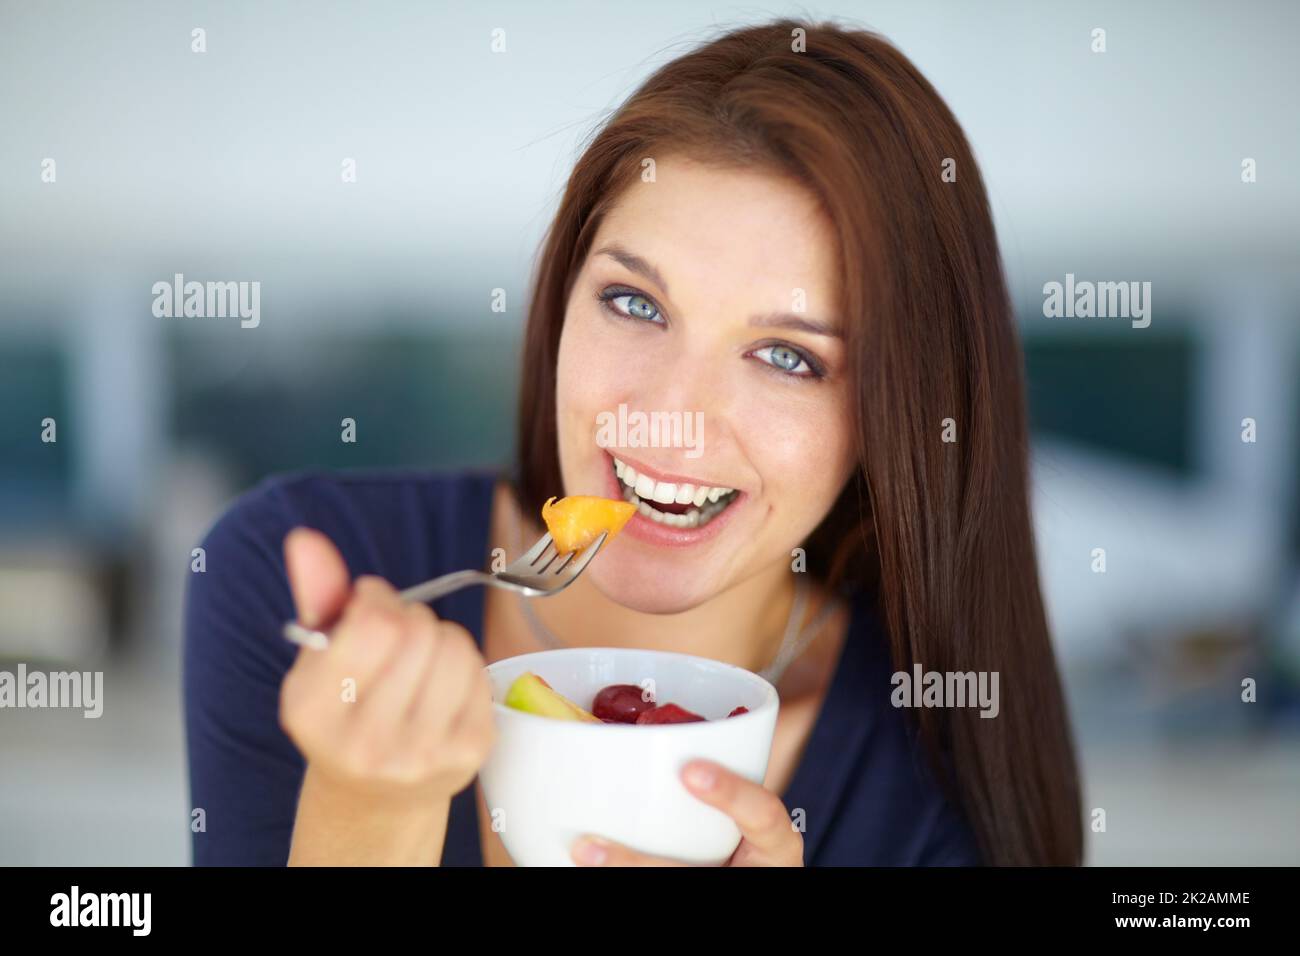 Genießen Sie einen leckeren, gesunden Snack. Porträt einer lächelnden jungen Frau, die mittags einen gesunden Obstsalat isst. Stockfoto